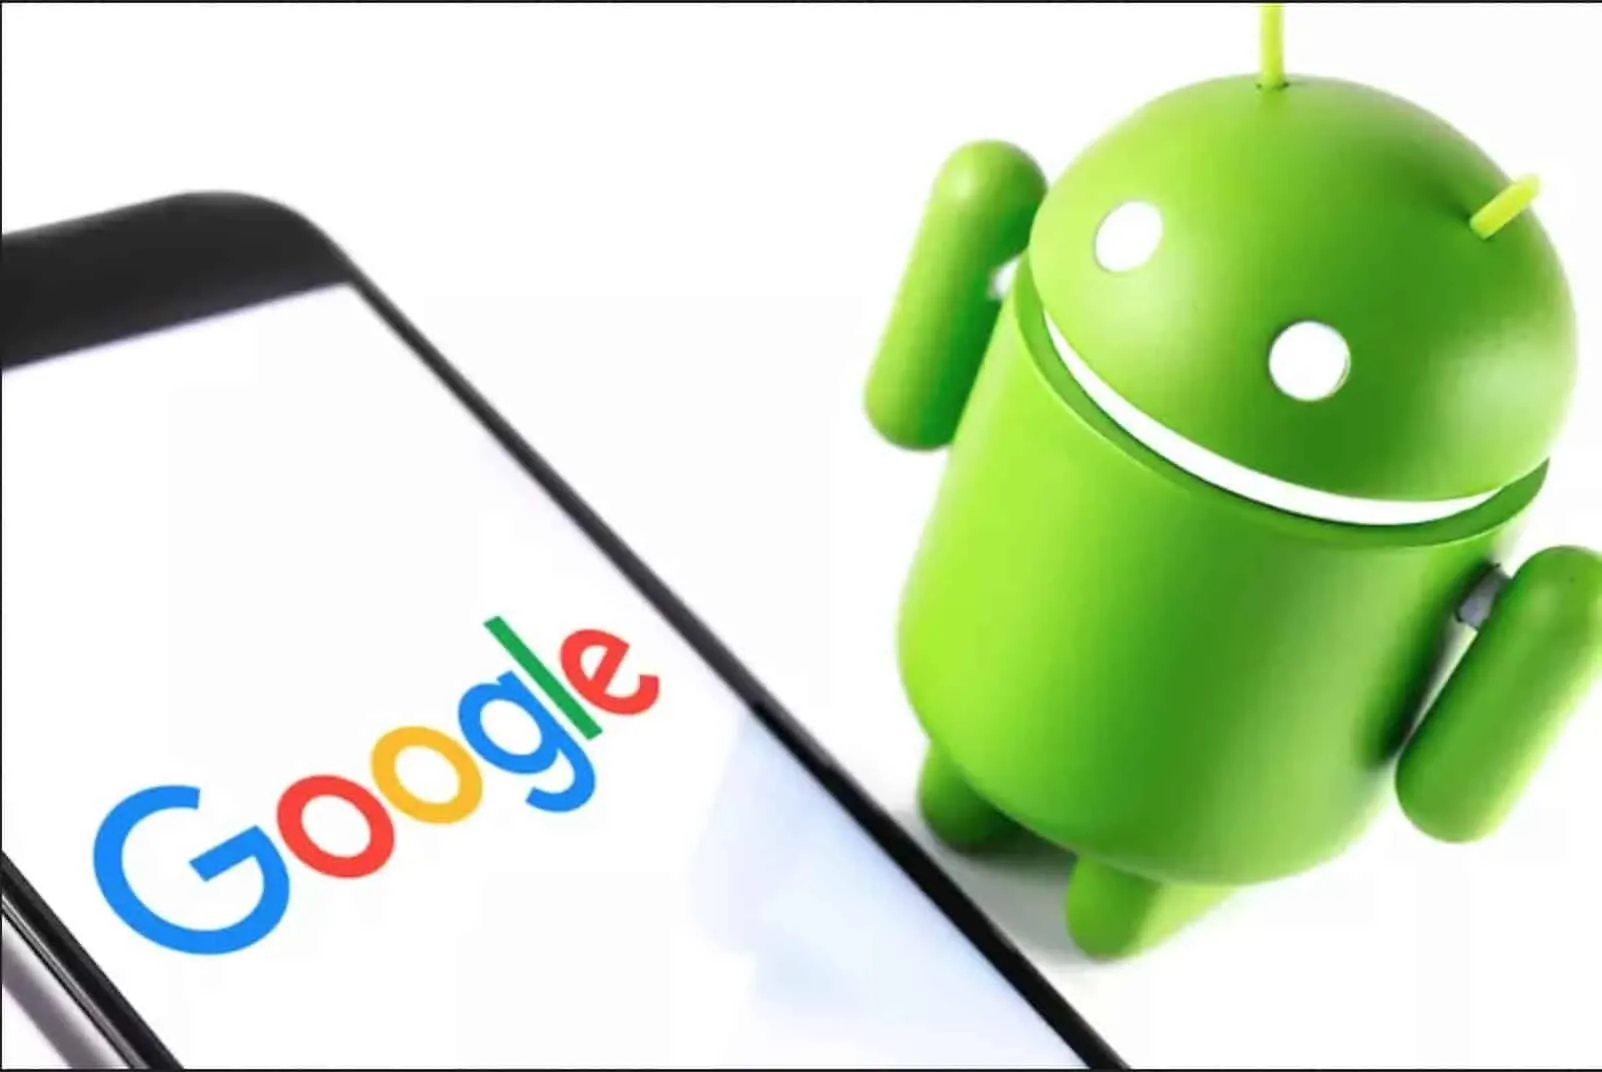 Google обнаружил серьезную уязвимость в безопасности смартфонов Samsung